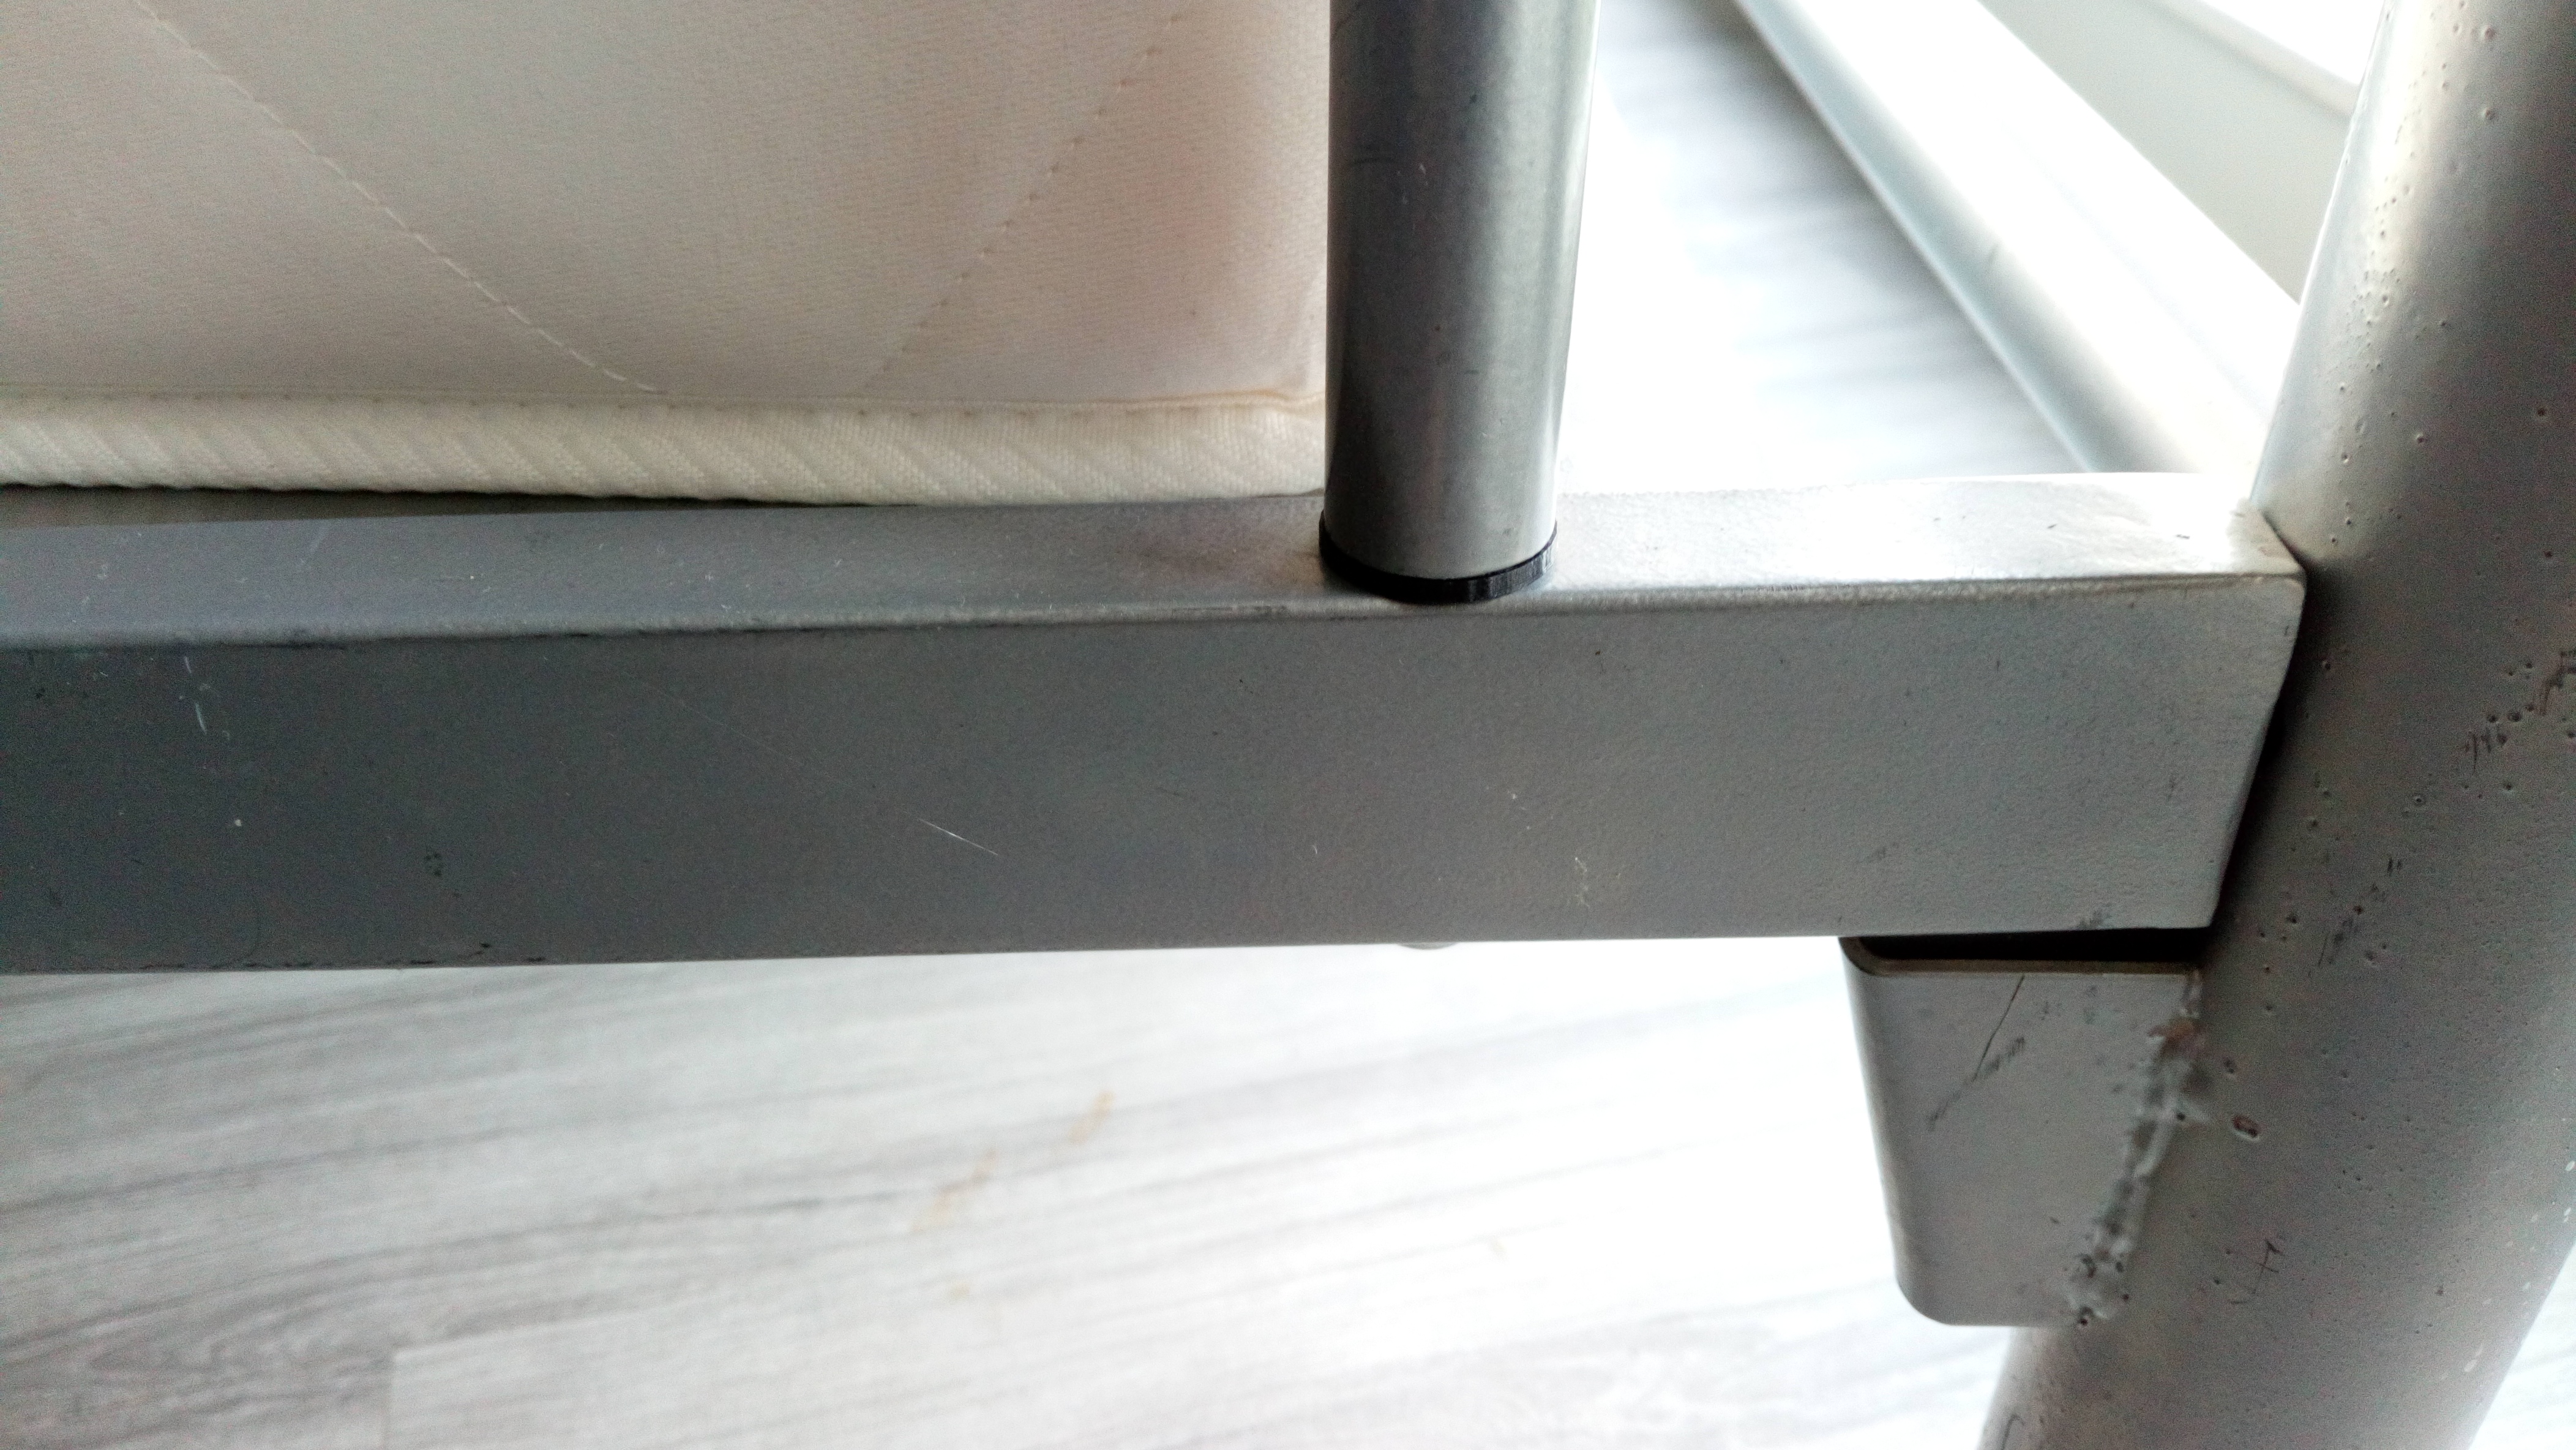 Metal Bed frame screw plug